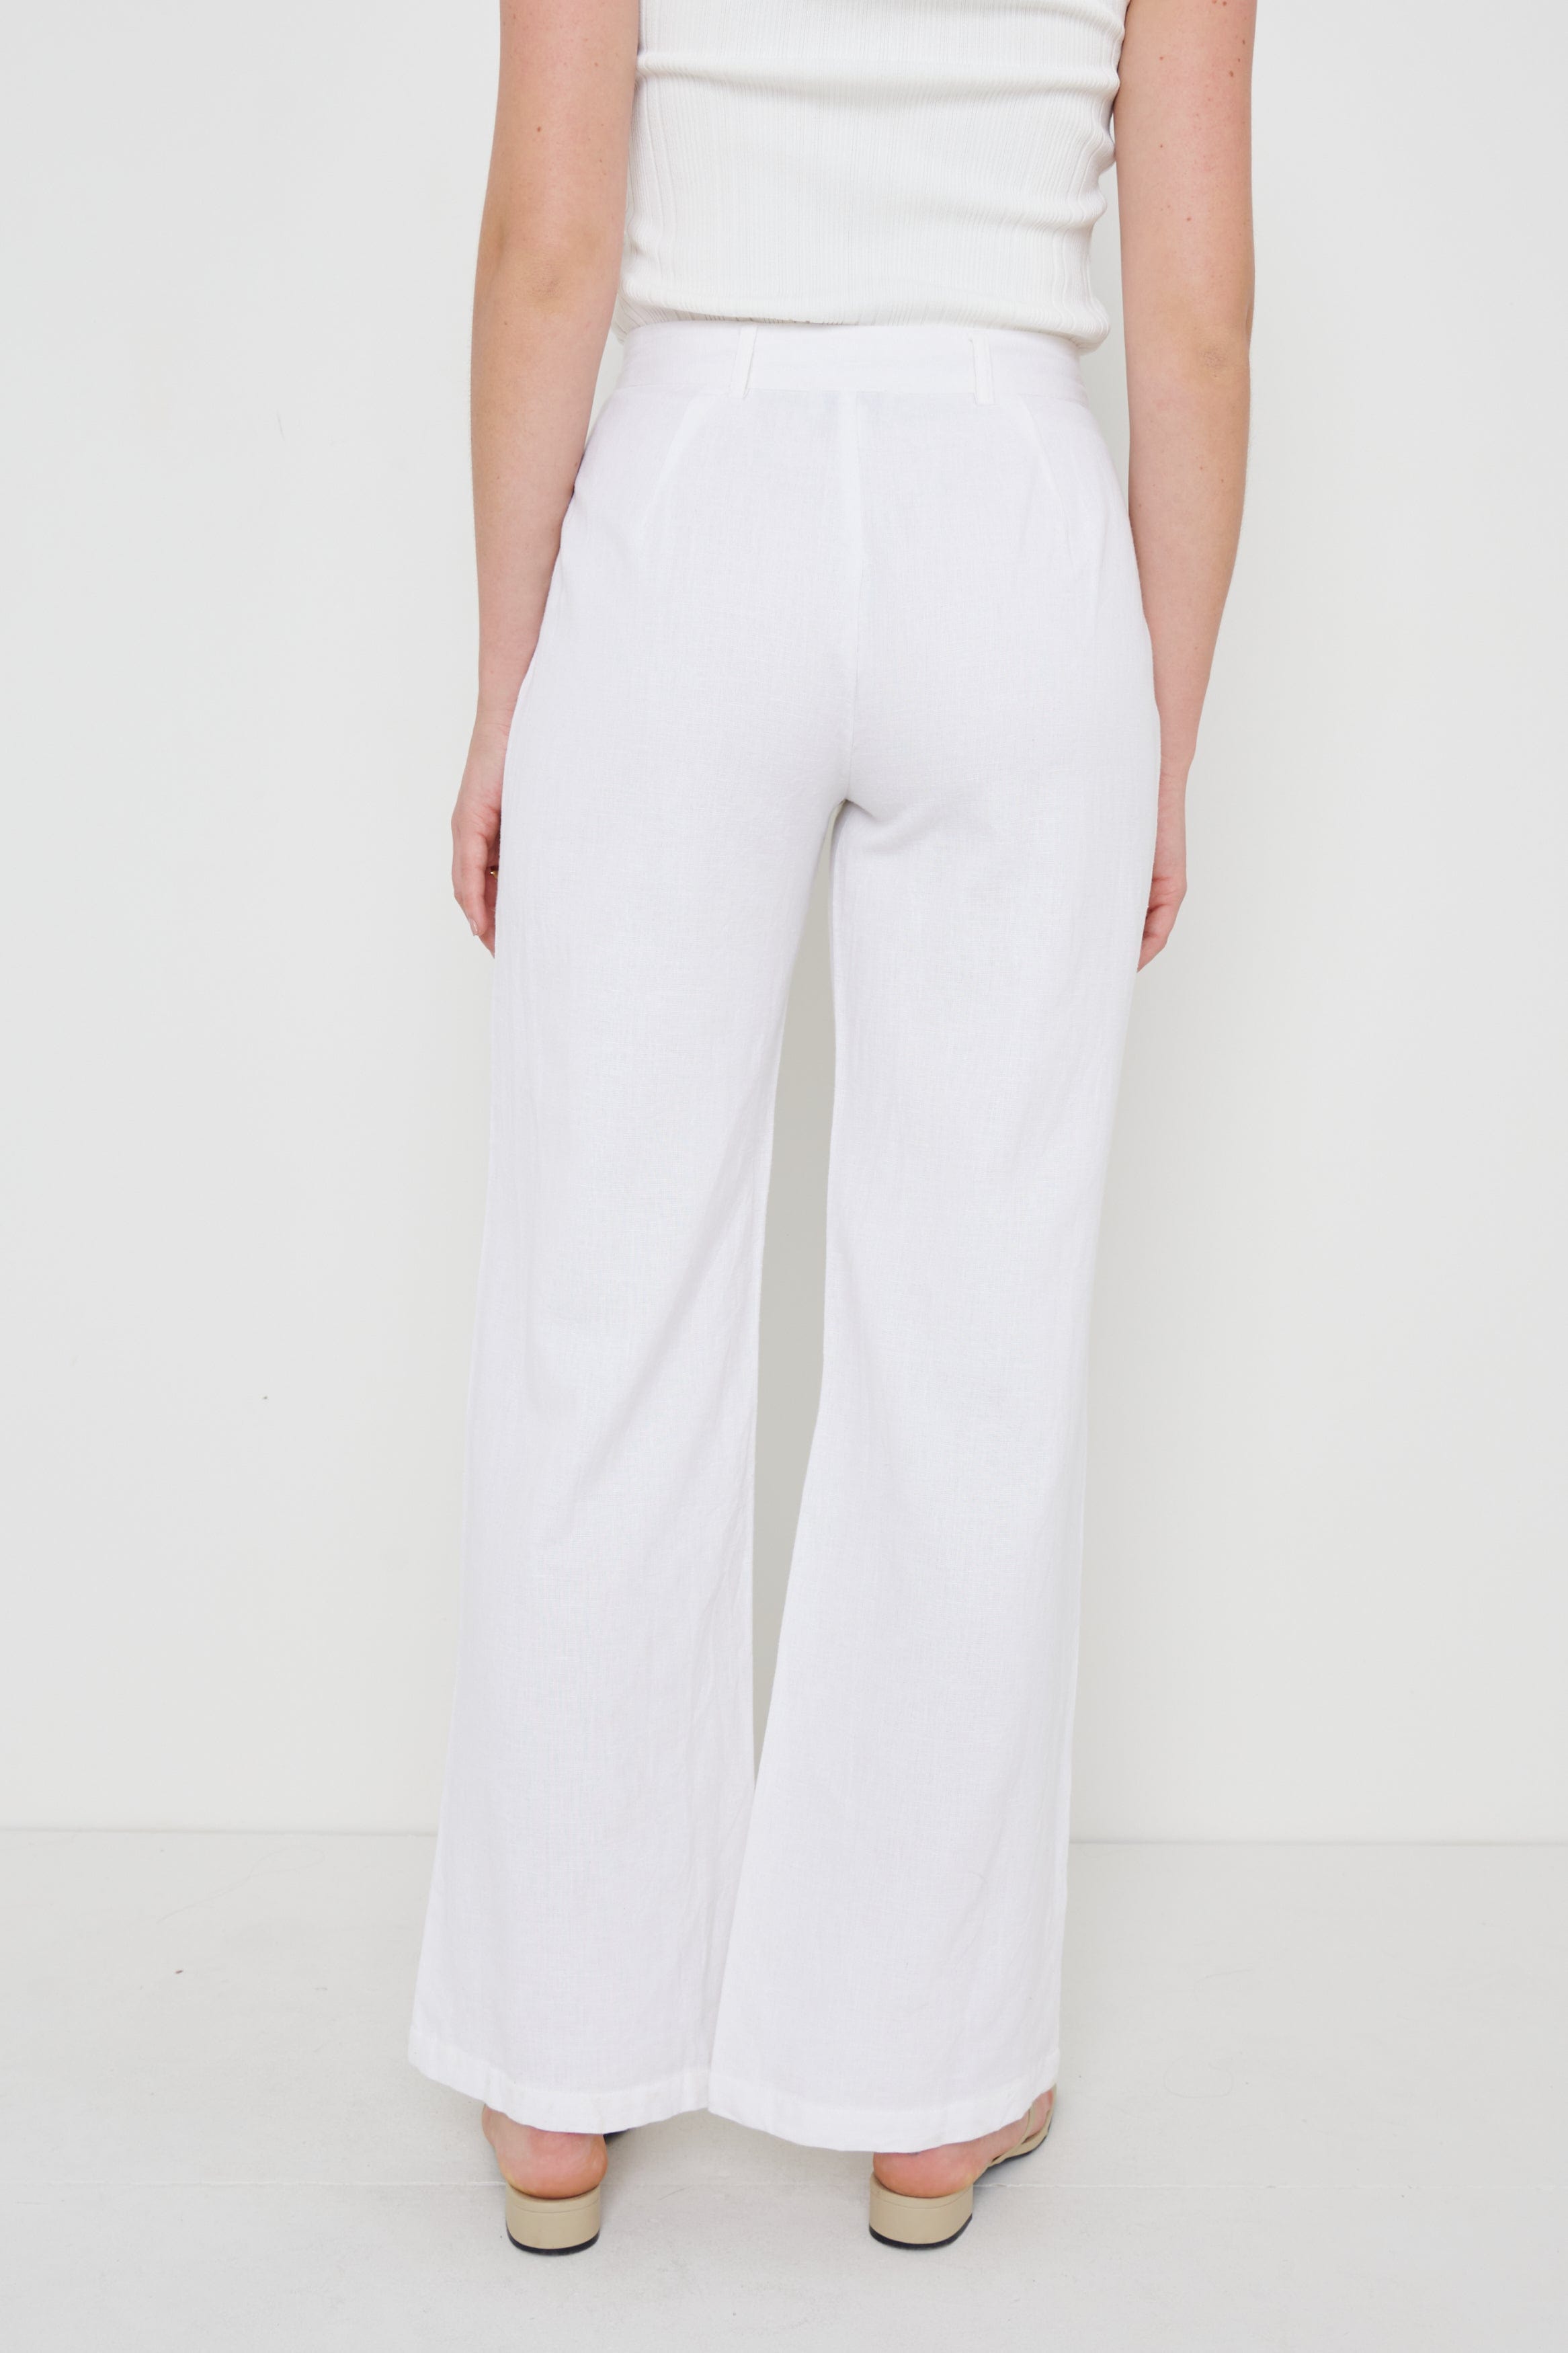 Marlowe Linen Trousers - Cream